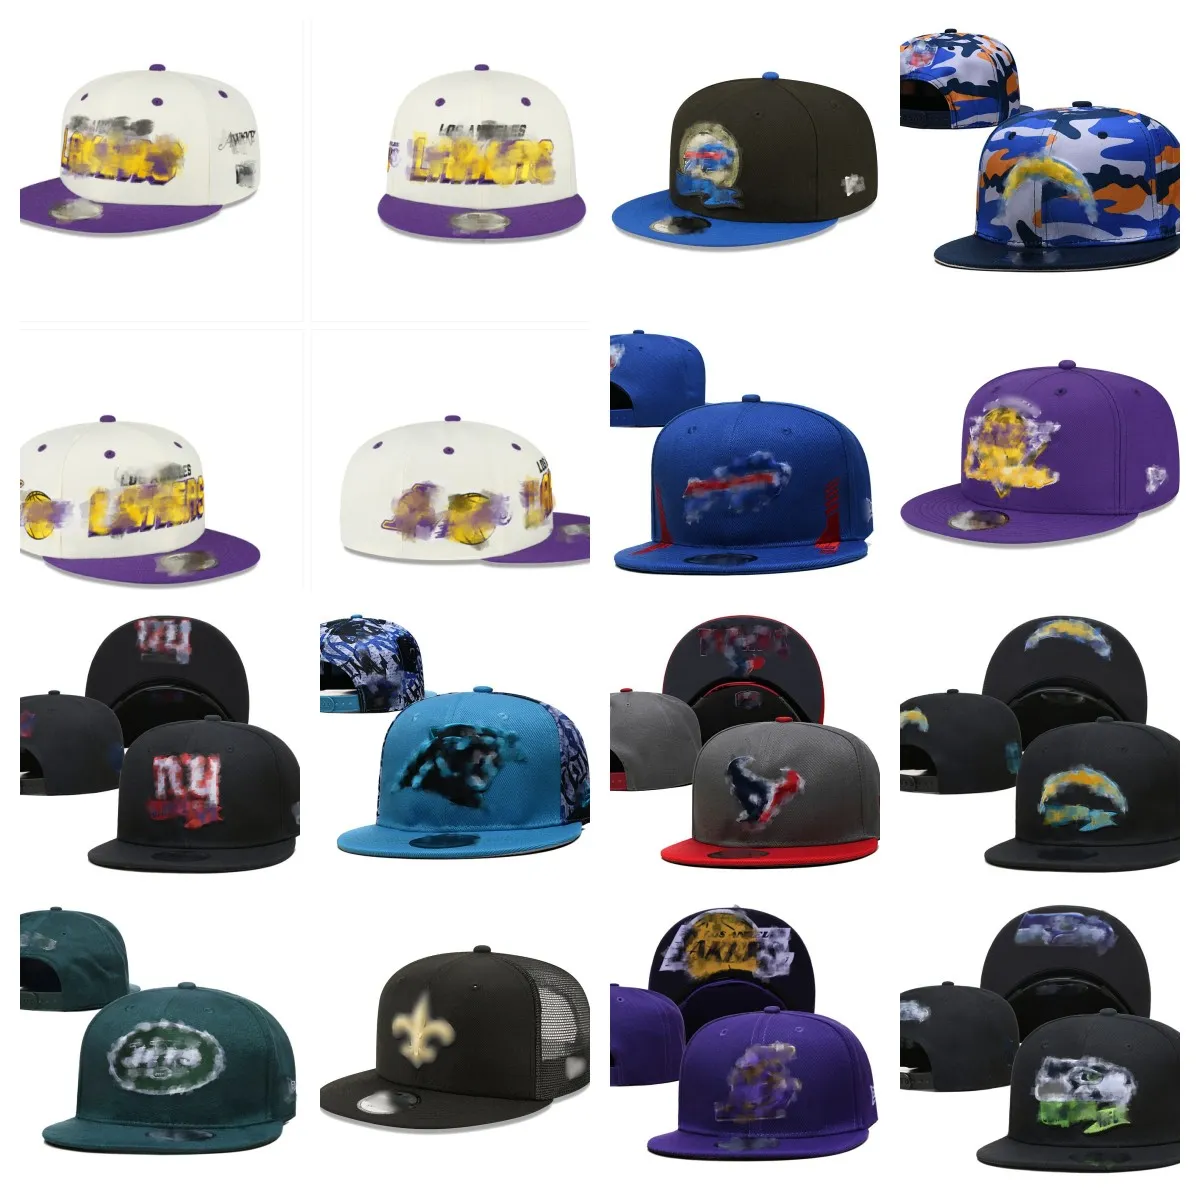 Дизайнерские шляпы всех команд логотип сногбэки, шляпы, мужчина женщина хлопковая вышивка футбол Baskball закрытая сетка Flex Beanies Fisherman Hap Hip Hop Sport Hockey Snapback Cap